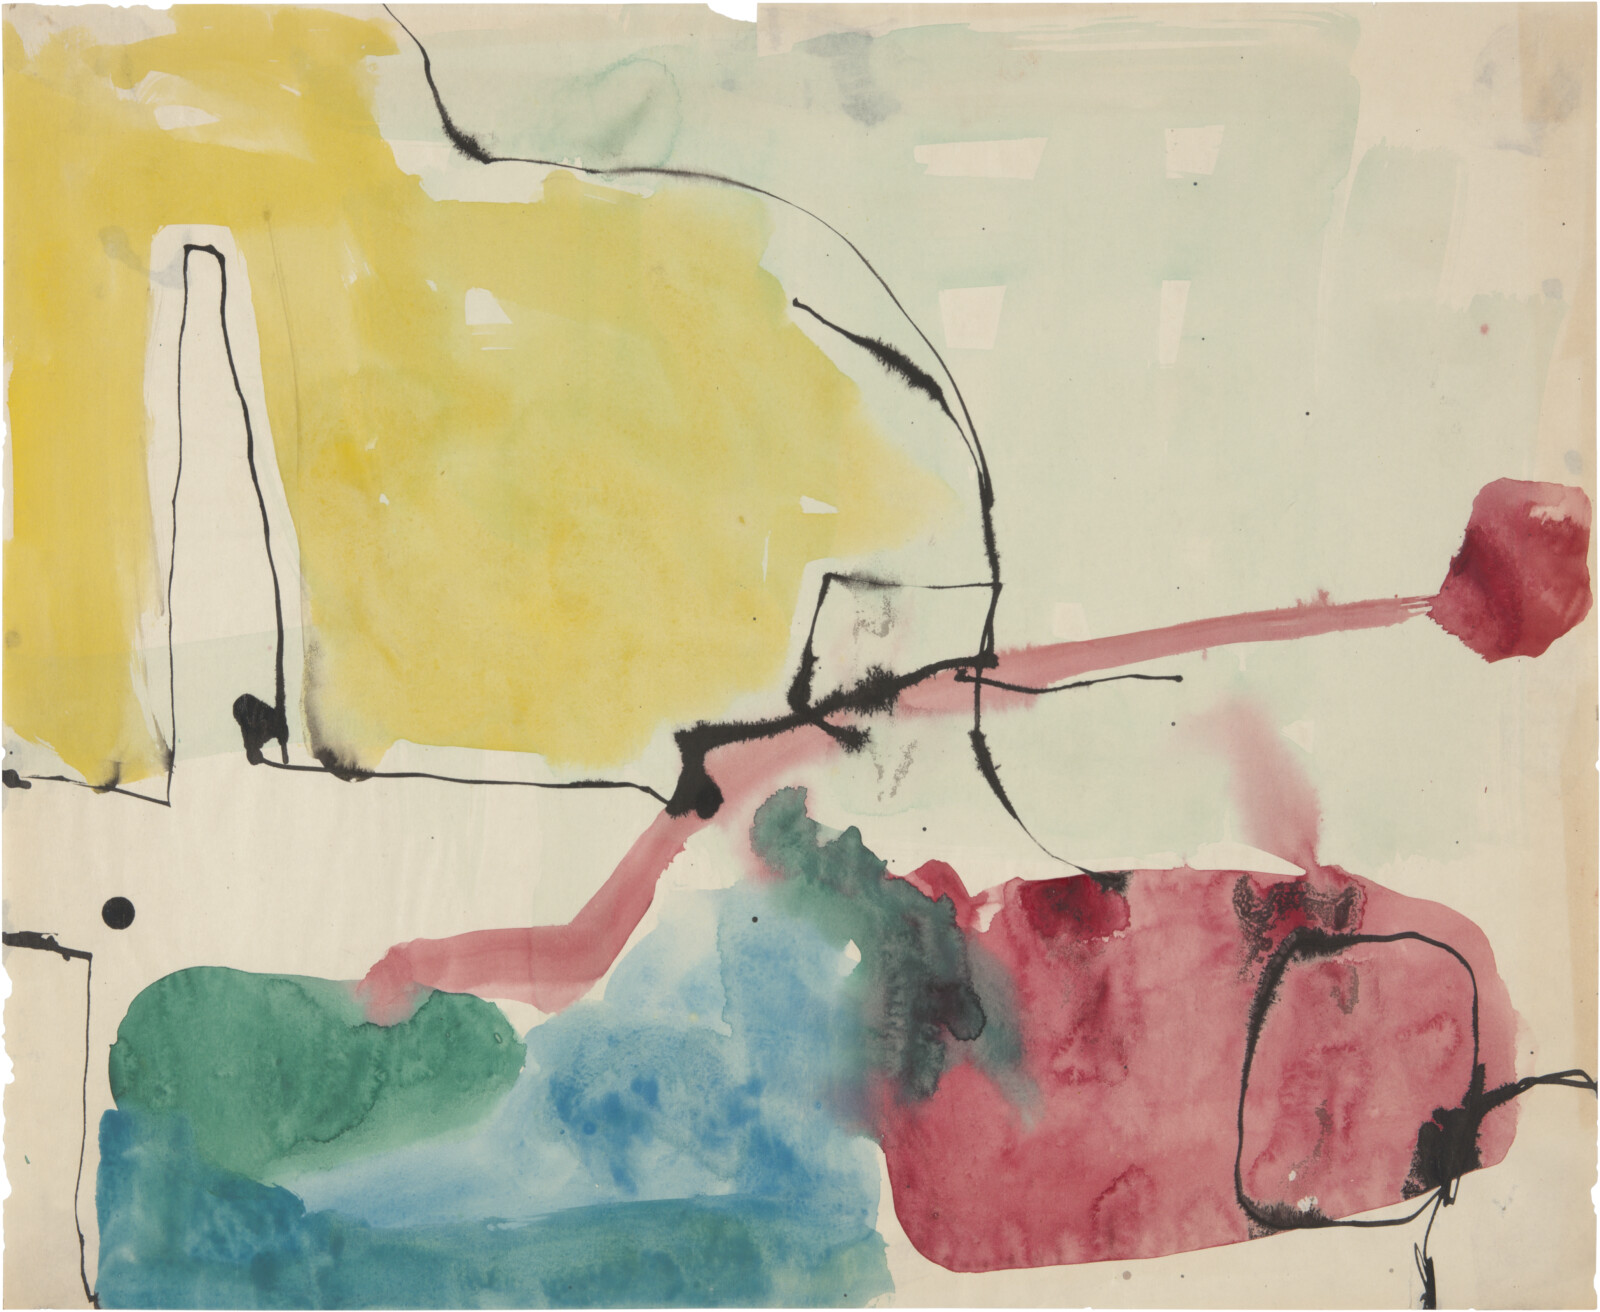 Richard Diebenkorn: Works on Paper, 1949–1992